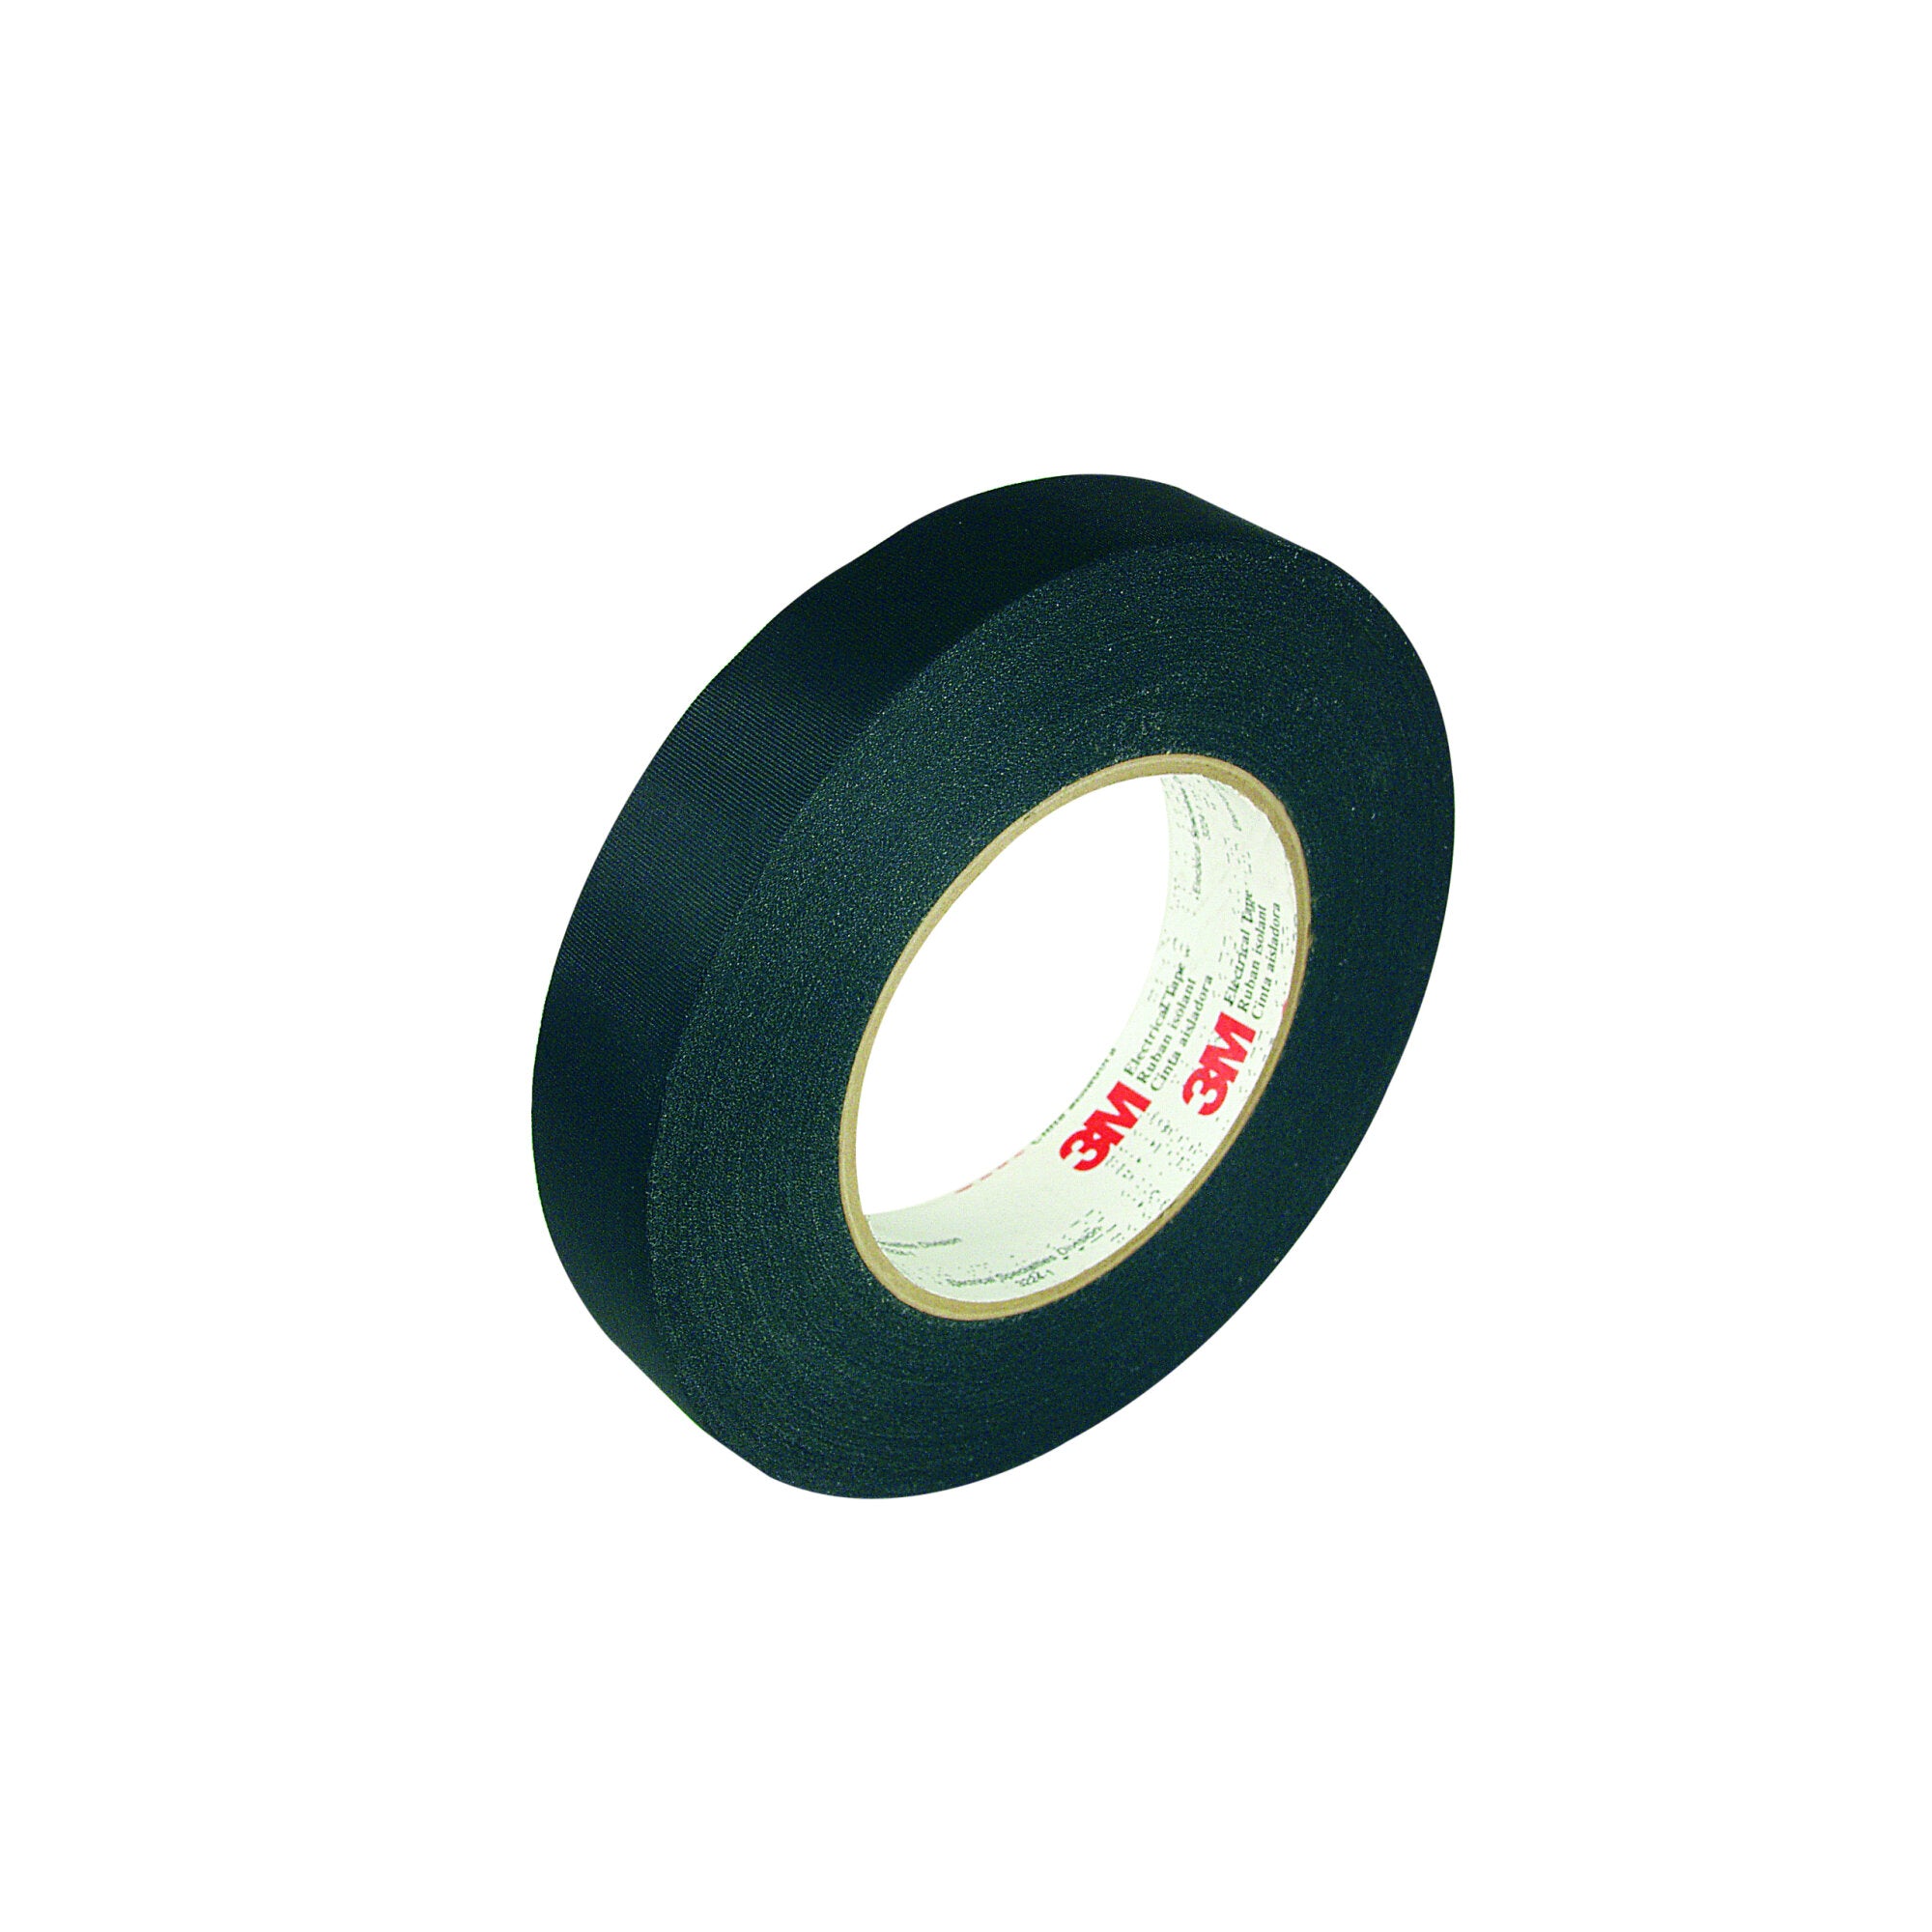 3M Acetate Cloth Tape 11, 23-3/4 in x 72 yd, 3 in Paper Core, Log Roll,
Black